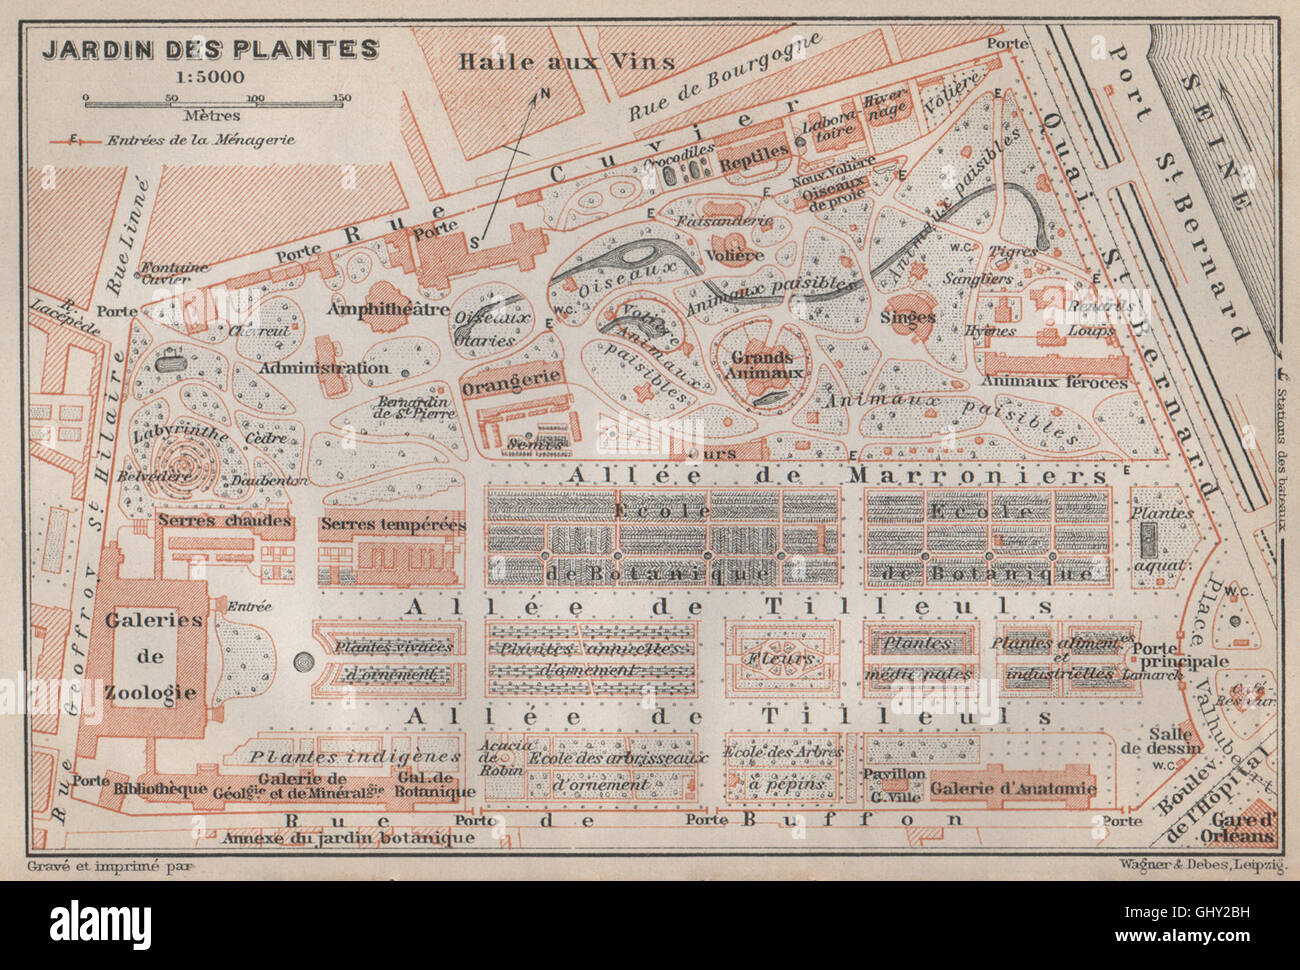 JARDIN DES PLANTES ground plan. Paris 5e carte. BAEDEKER, 1910 antique map  Stock Photo - Alamy